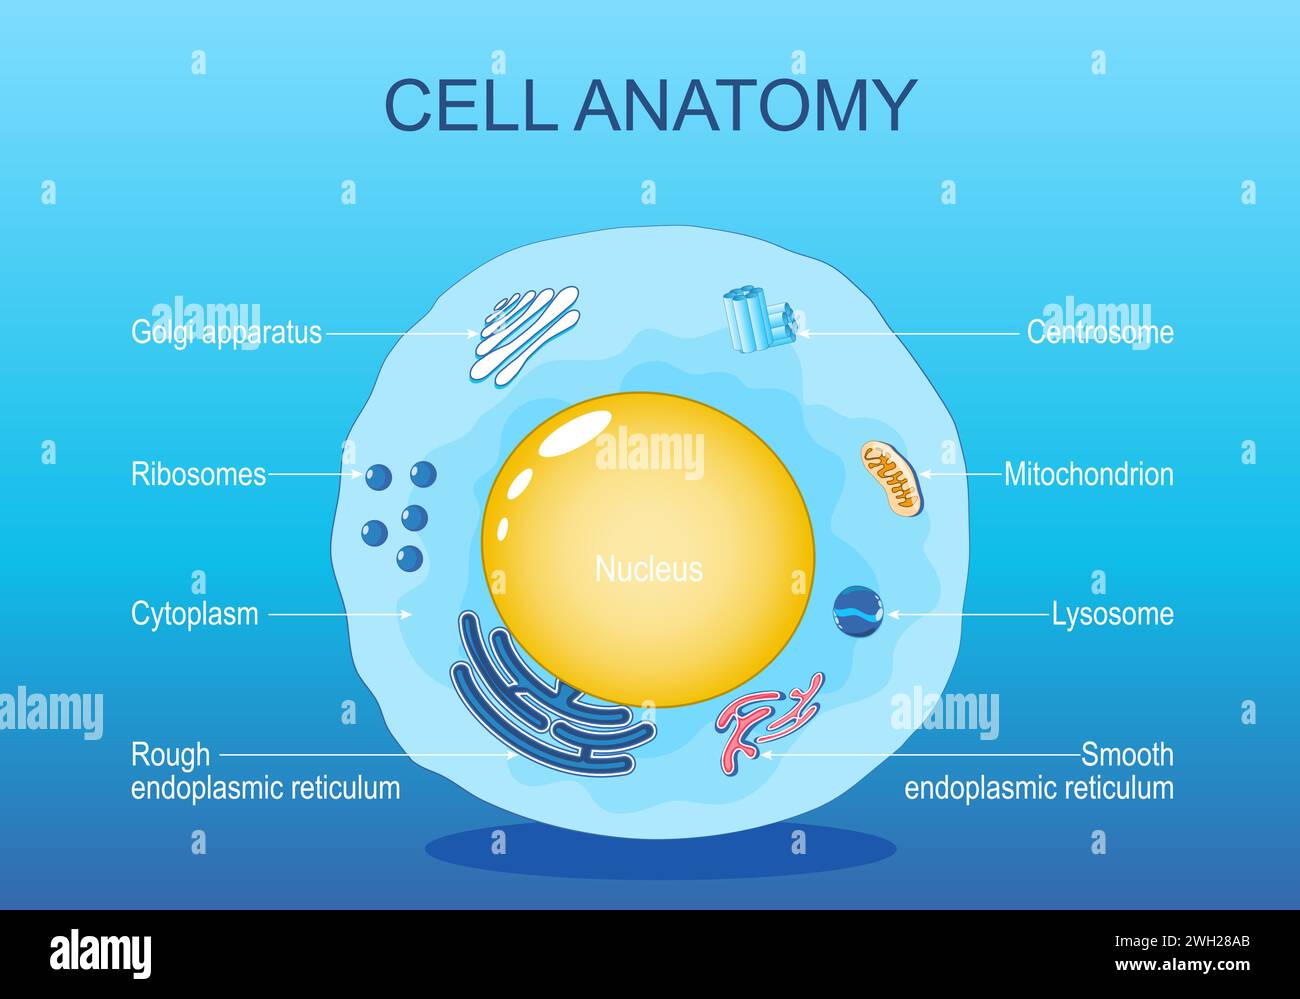 Anatomie der tierischen Zelle. Menschliche Zellstruktur. Alle Organellen: Nucleus, Ribosom, raues endoplasmatisches Retikulum, Golgi-Apparat, Mitochondrion, Zytoplas Stock Vektor